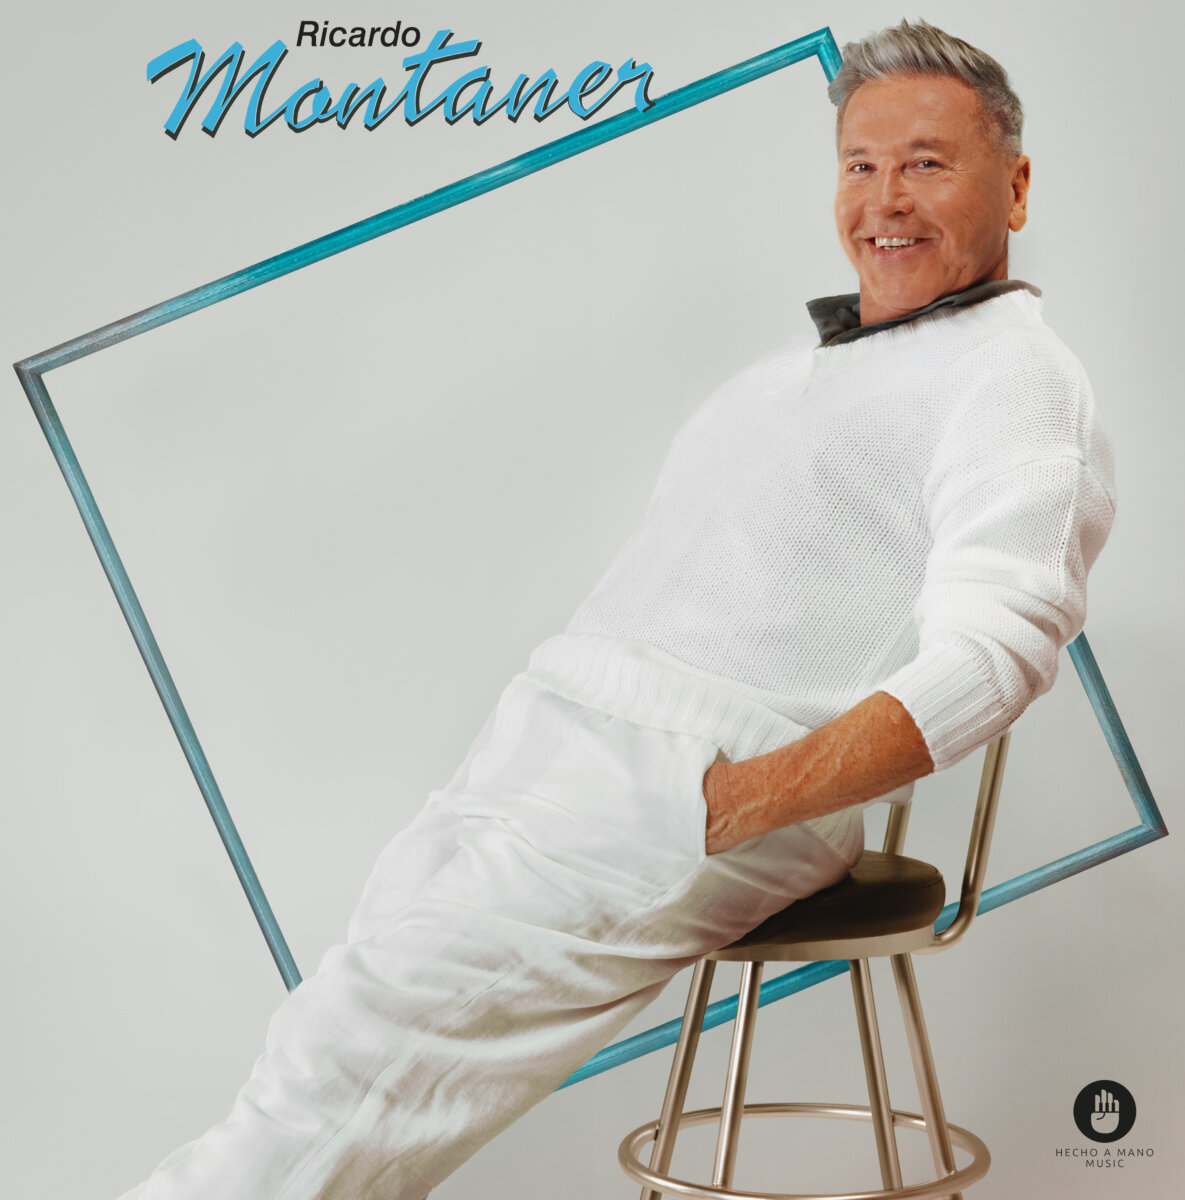 Ricardo Montaner lanza un álbum que promete cautivar a las nuevas generaciones El álbum, titulado simplemente 'Ricardo Montaner' (Versión Montaner - Hecho a Mano Music), es una mezcla de nostalgia y modernidad que busca transportar a los oyentes en un viaje emocional inolvidable.